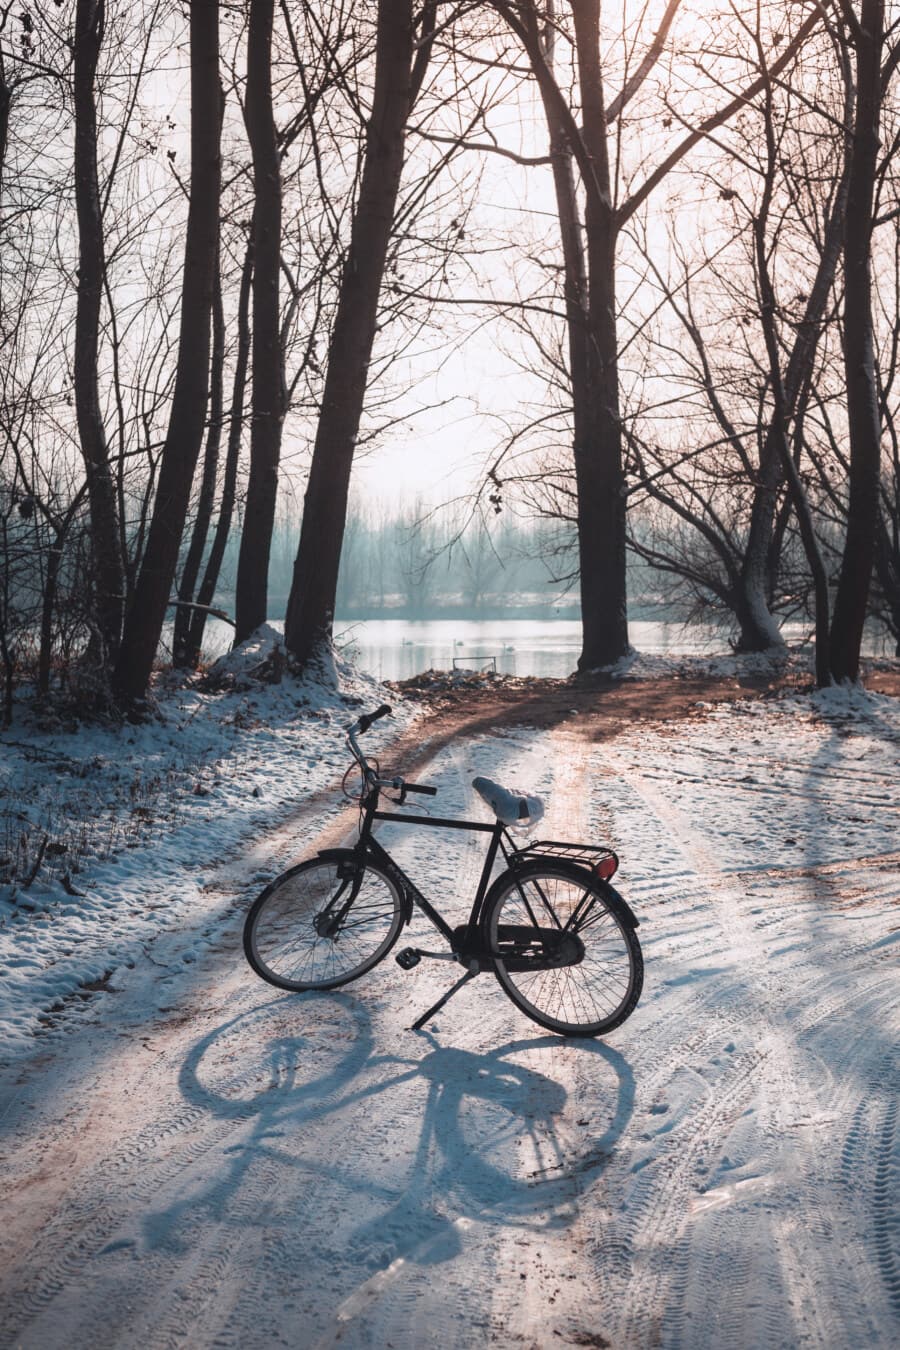 orman yolu, Kış, yol, bisiklet, kar, orman yolu, gölge, arkadan aydınlatmalı, ağaç, araç